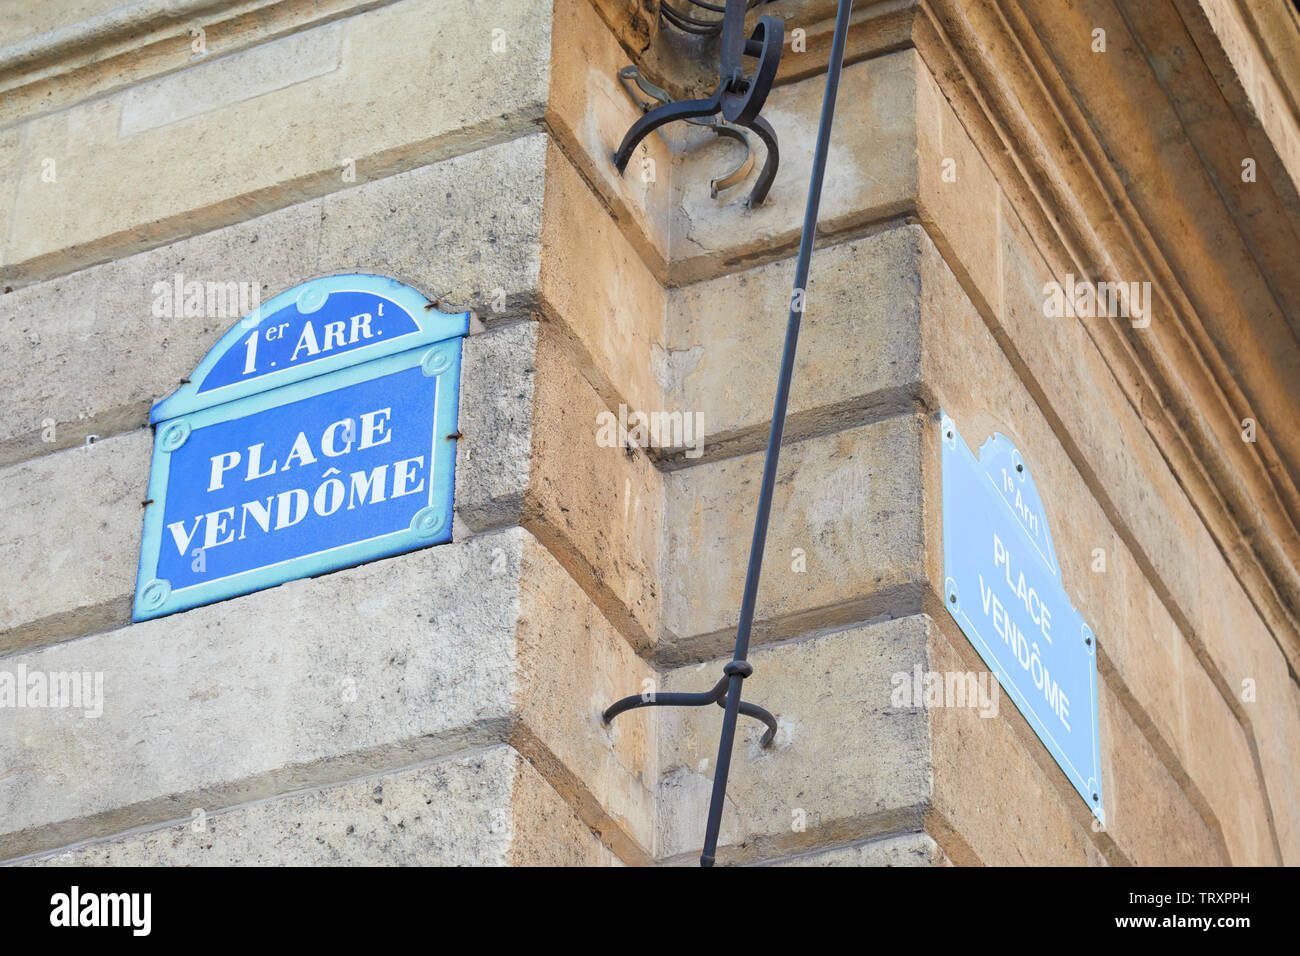 Berühmte Place Vendome Straßenschild und Ecke in Paris, Frankreich Stockfoto